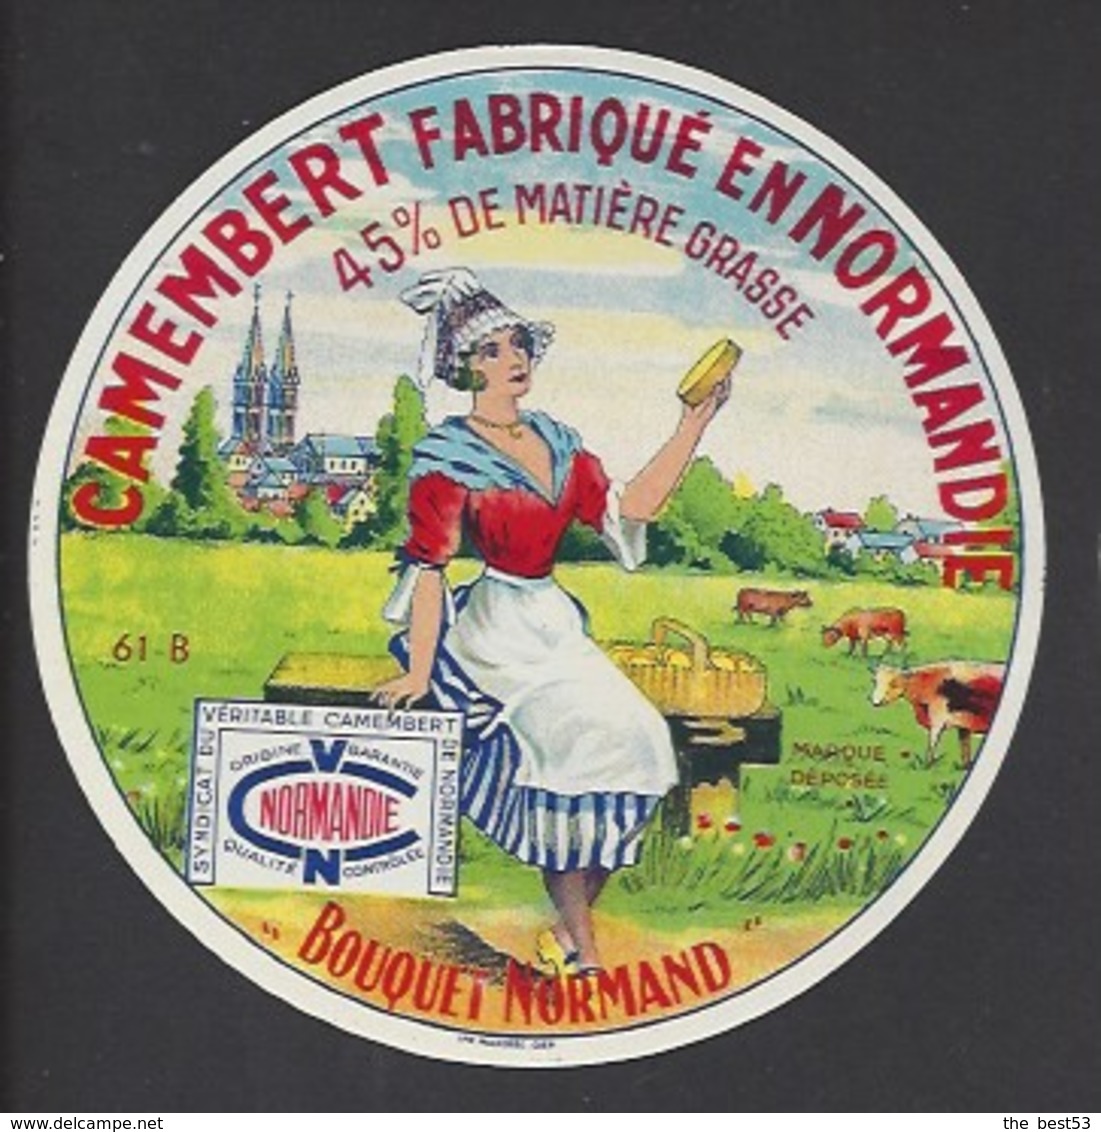 Etiquette De Fromage  Camembert  -  Bouquet Normand  - Laiterie De Mantilly    (61 B ) - Fromage